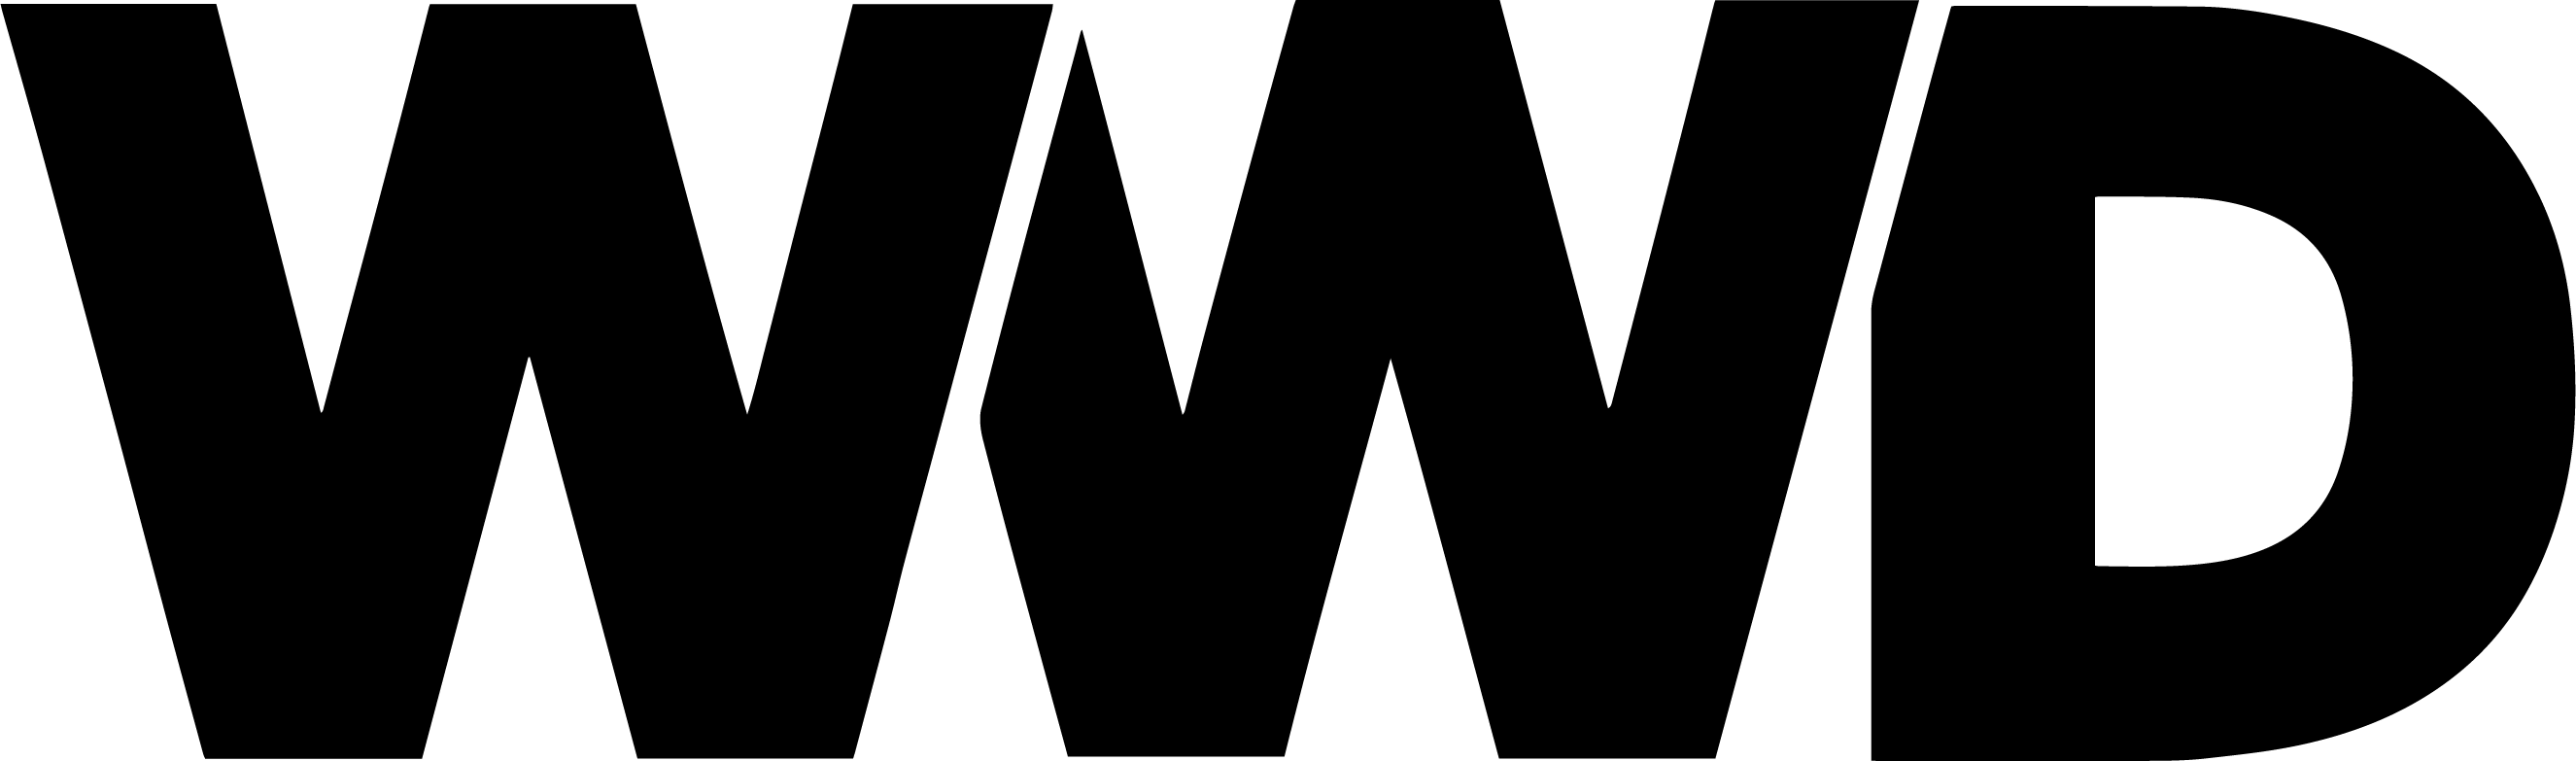 WWWD logo